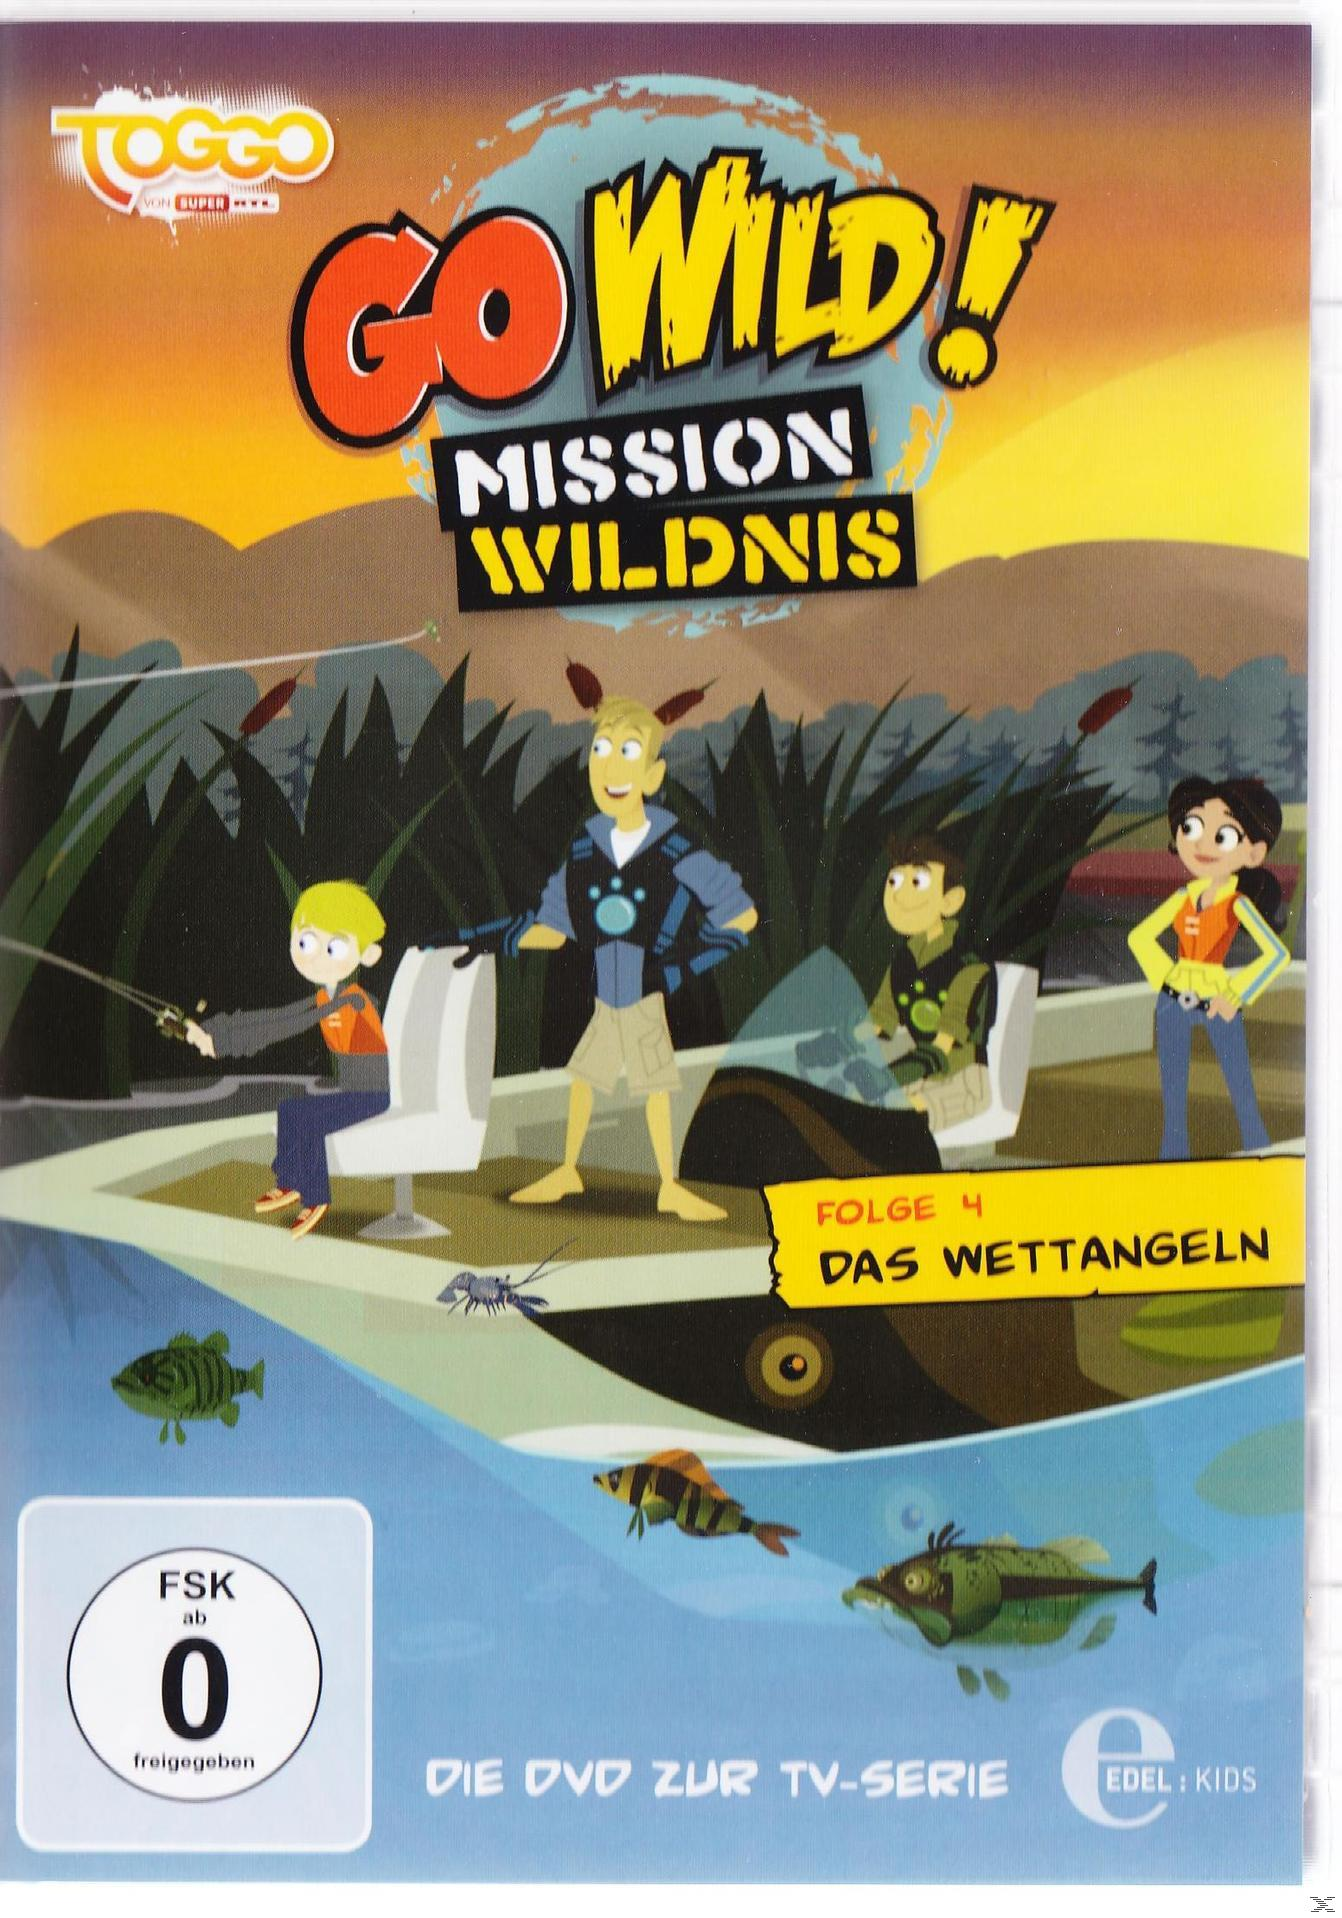 Wildnis - 004 Das - Wild! Mission Go DVD Wettangeln